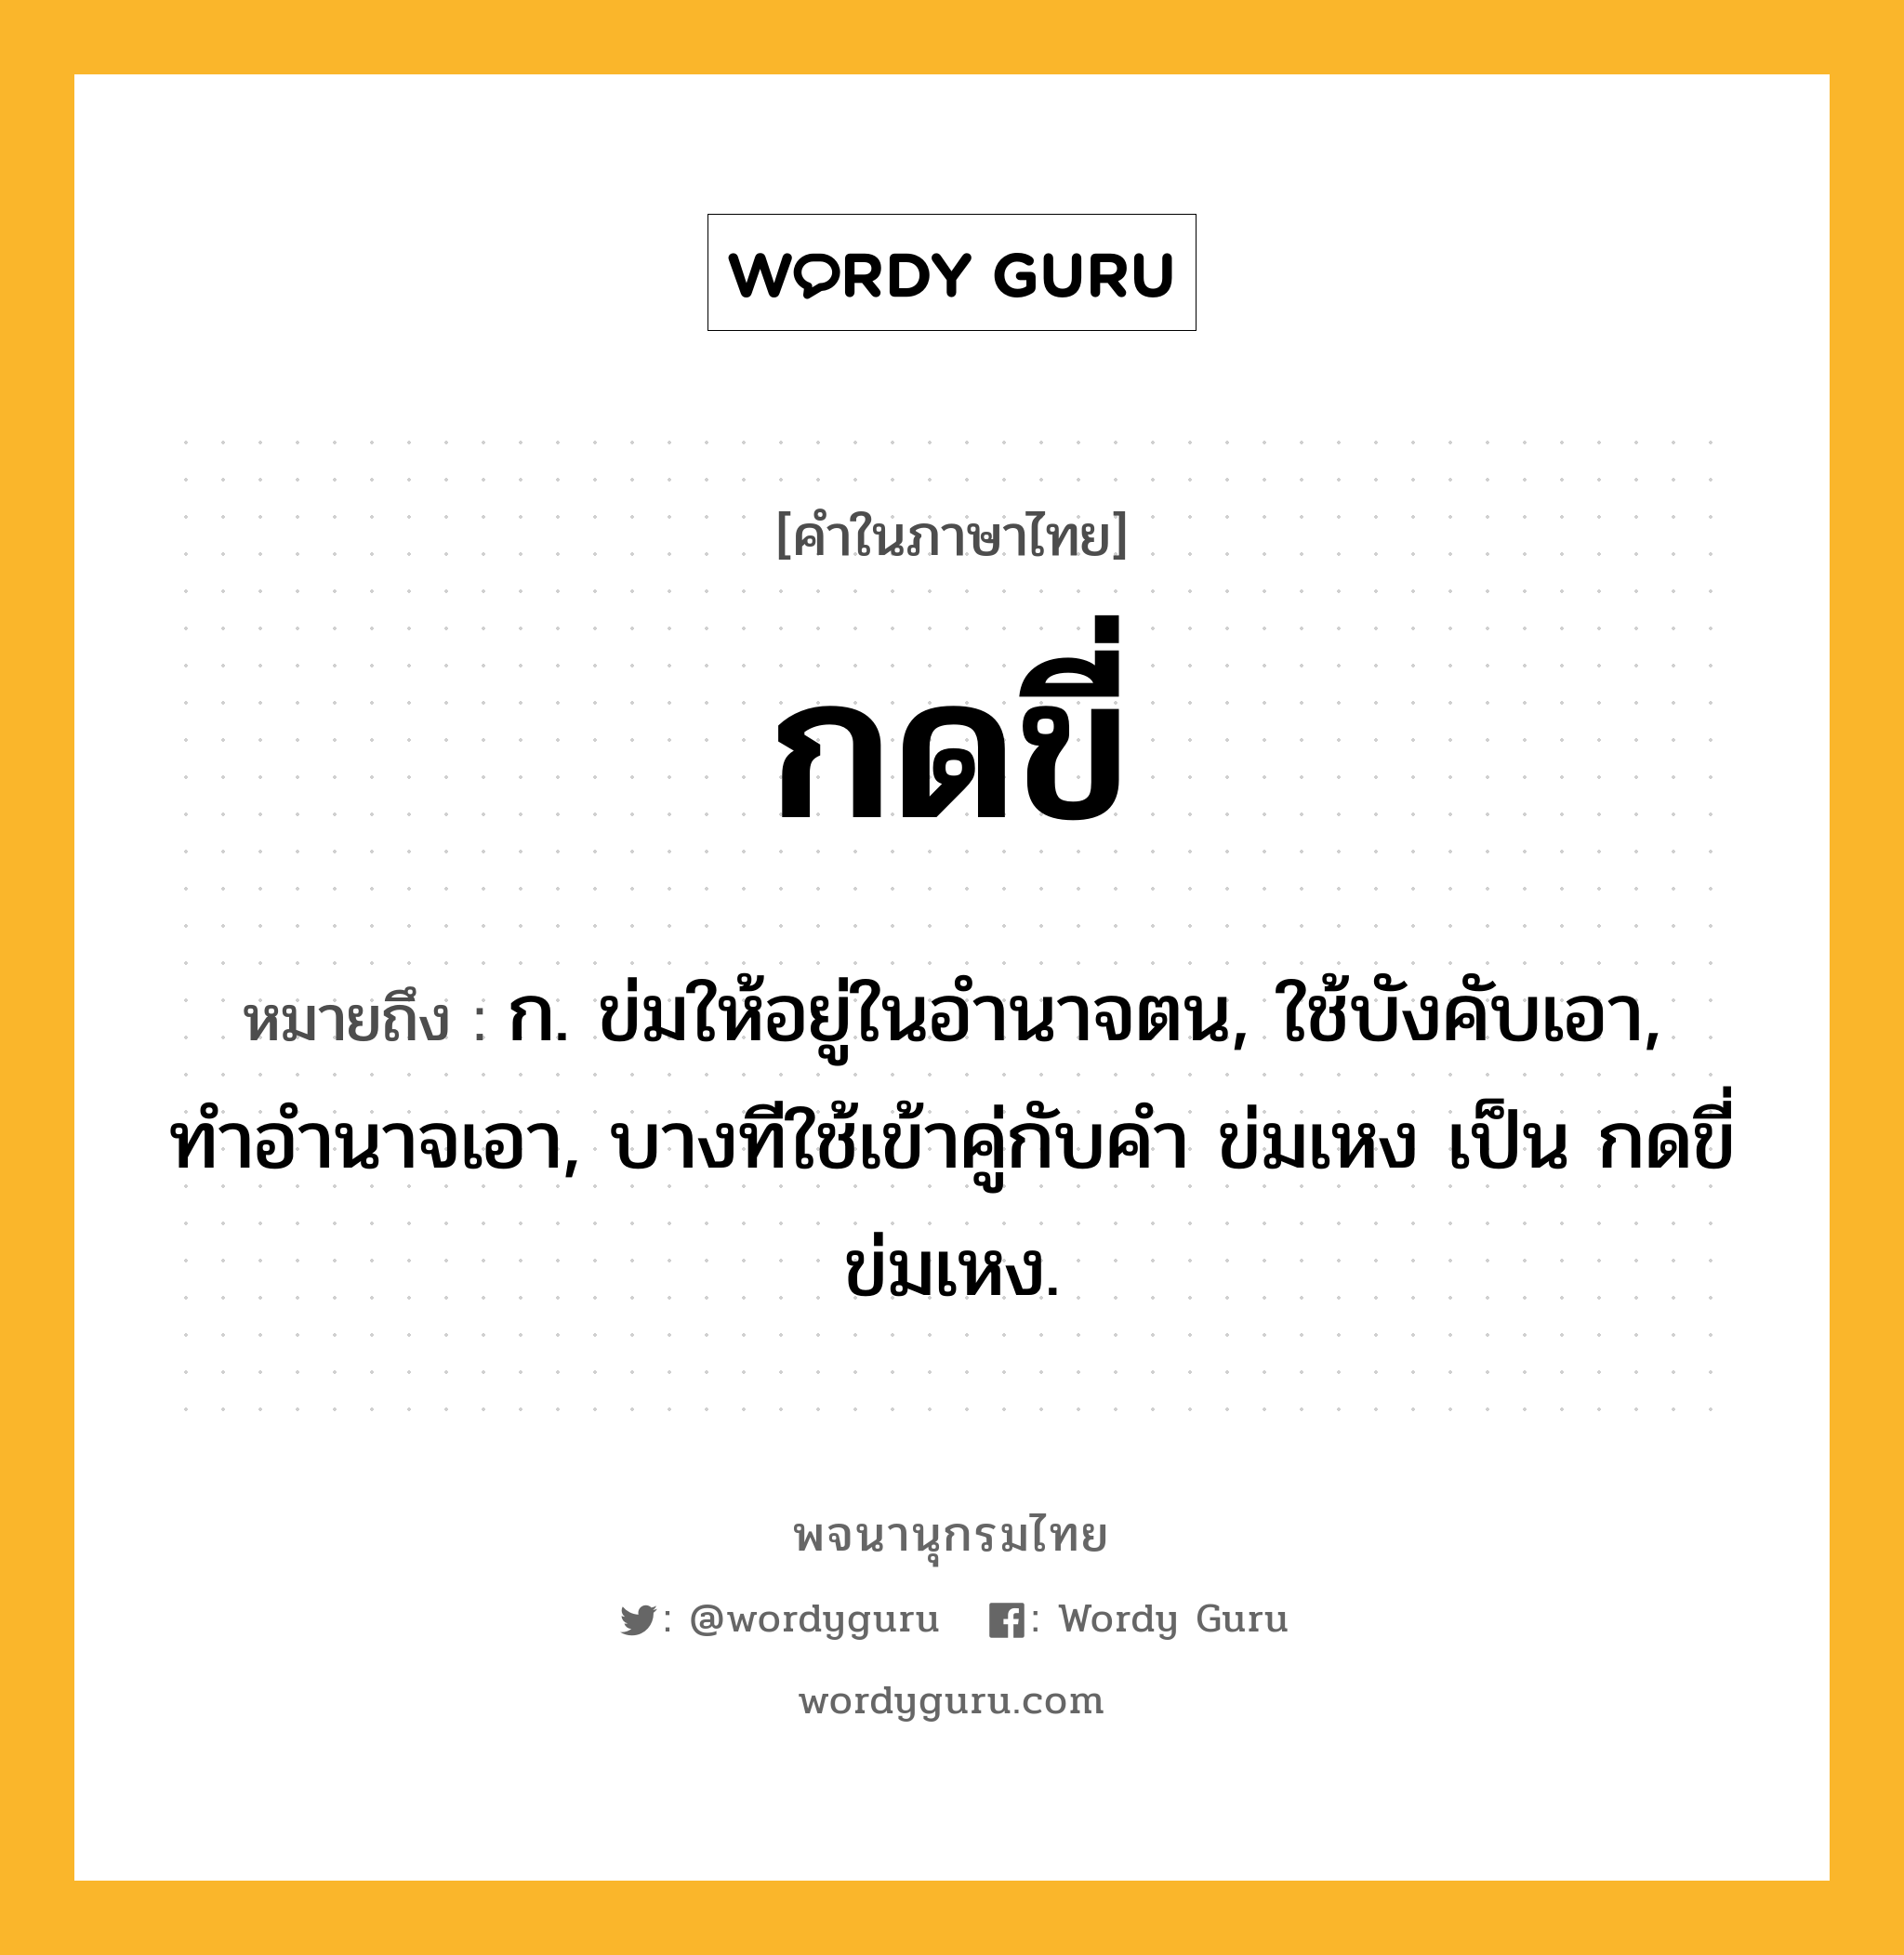 กดขี่ ความหมาย หมายถึงอะไร?, คำในภาษาไทย กดขี่ หมายถึง ก. ข่มให้อยู่ในอํานาจตน, ใช้บังคับเอา, ทําอํานาจเอา, บางทีใช้เข้าคู่กับคำ ข่มเหง เป็น กดขี่ข่มเหง.